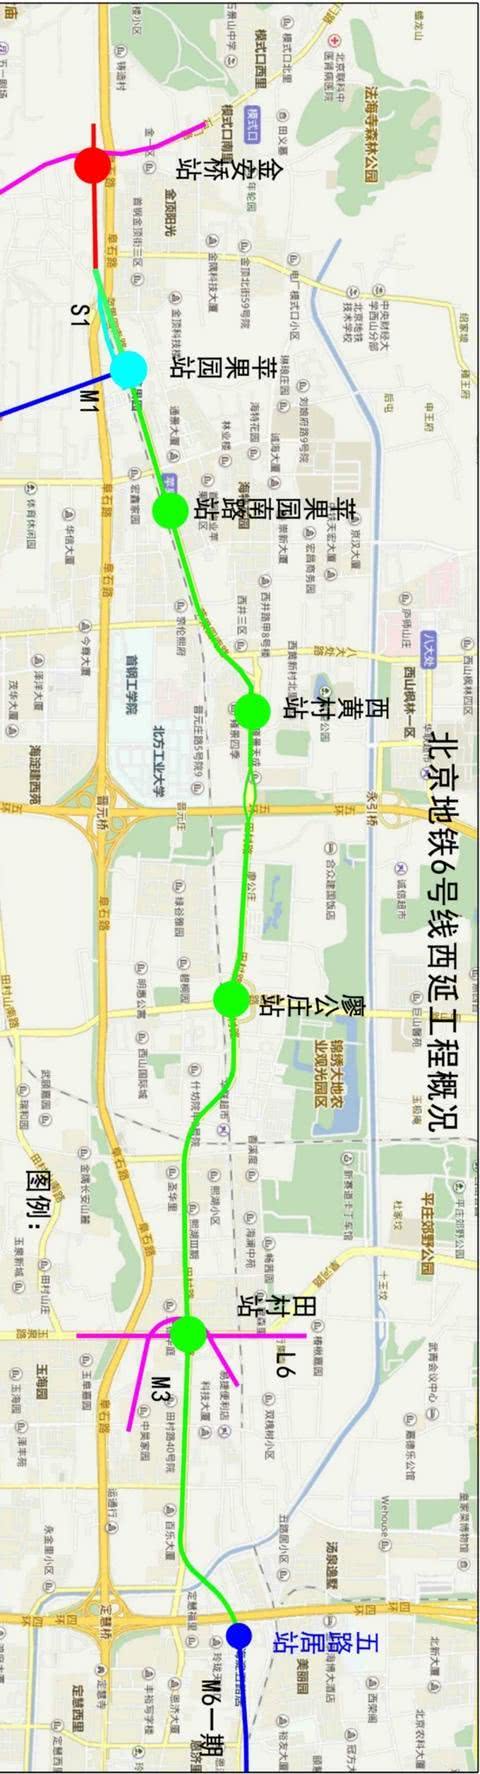 北京地铁6号线西延线苹果园站以东今起空载试运行-中国网地产